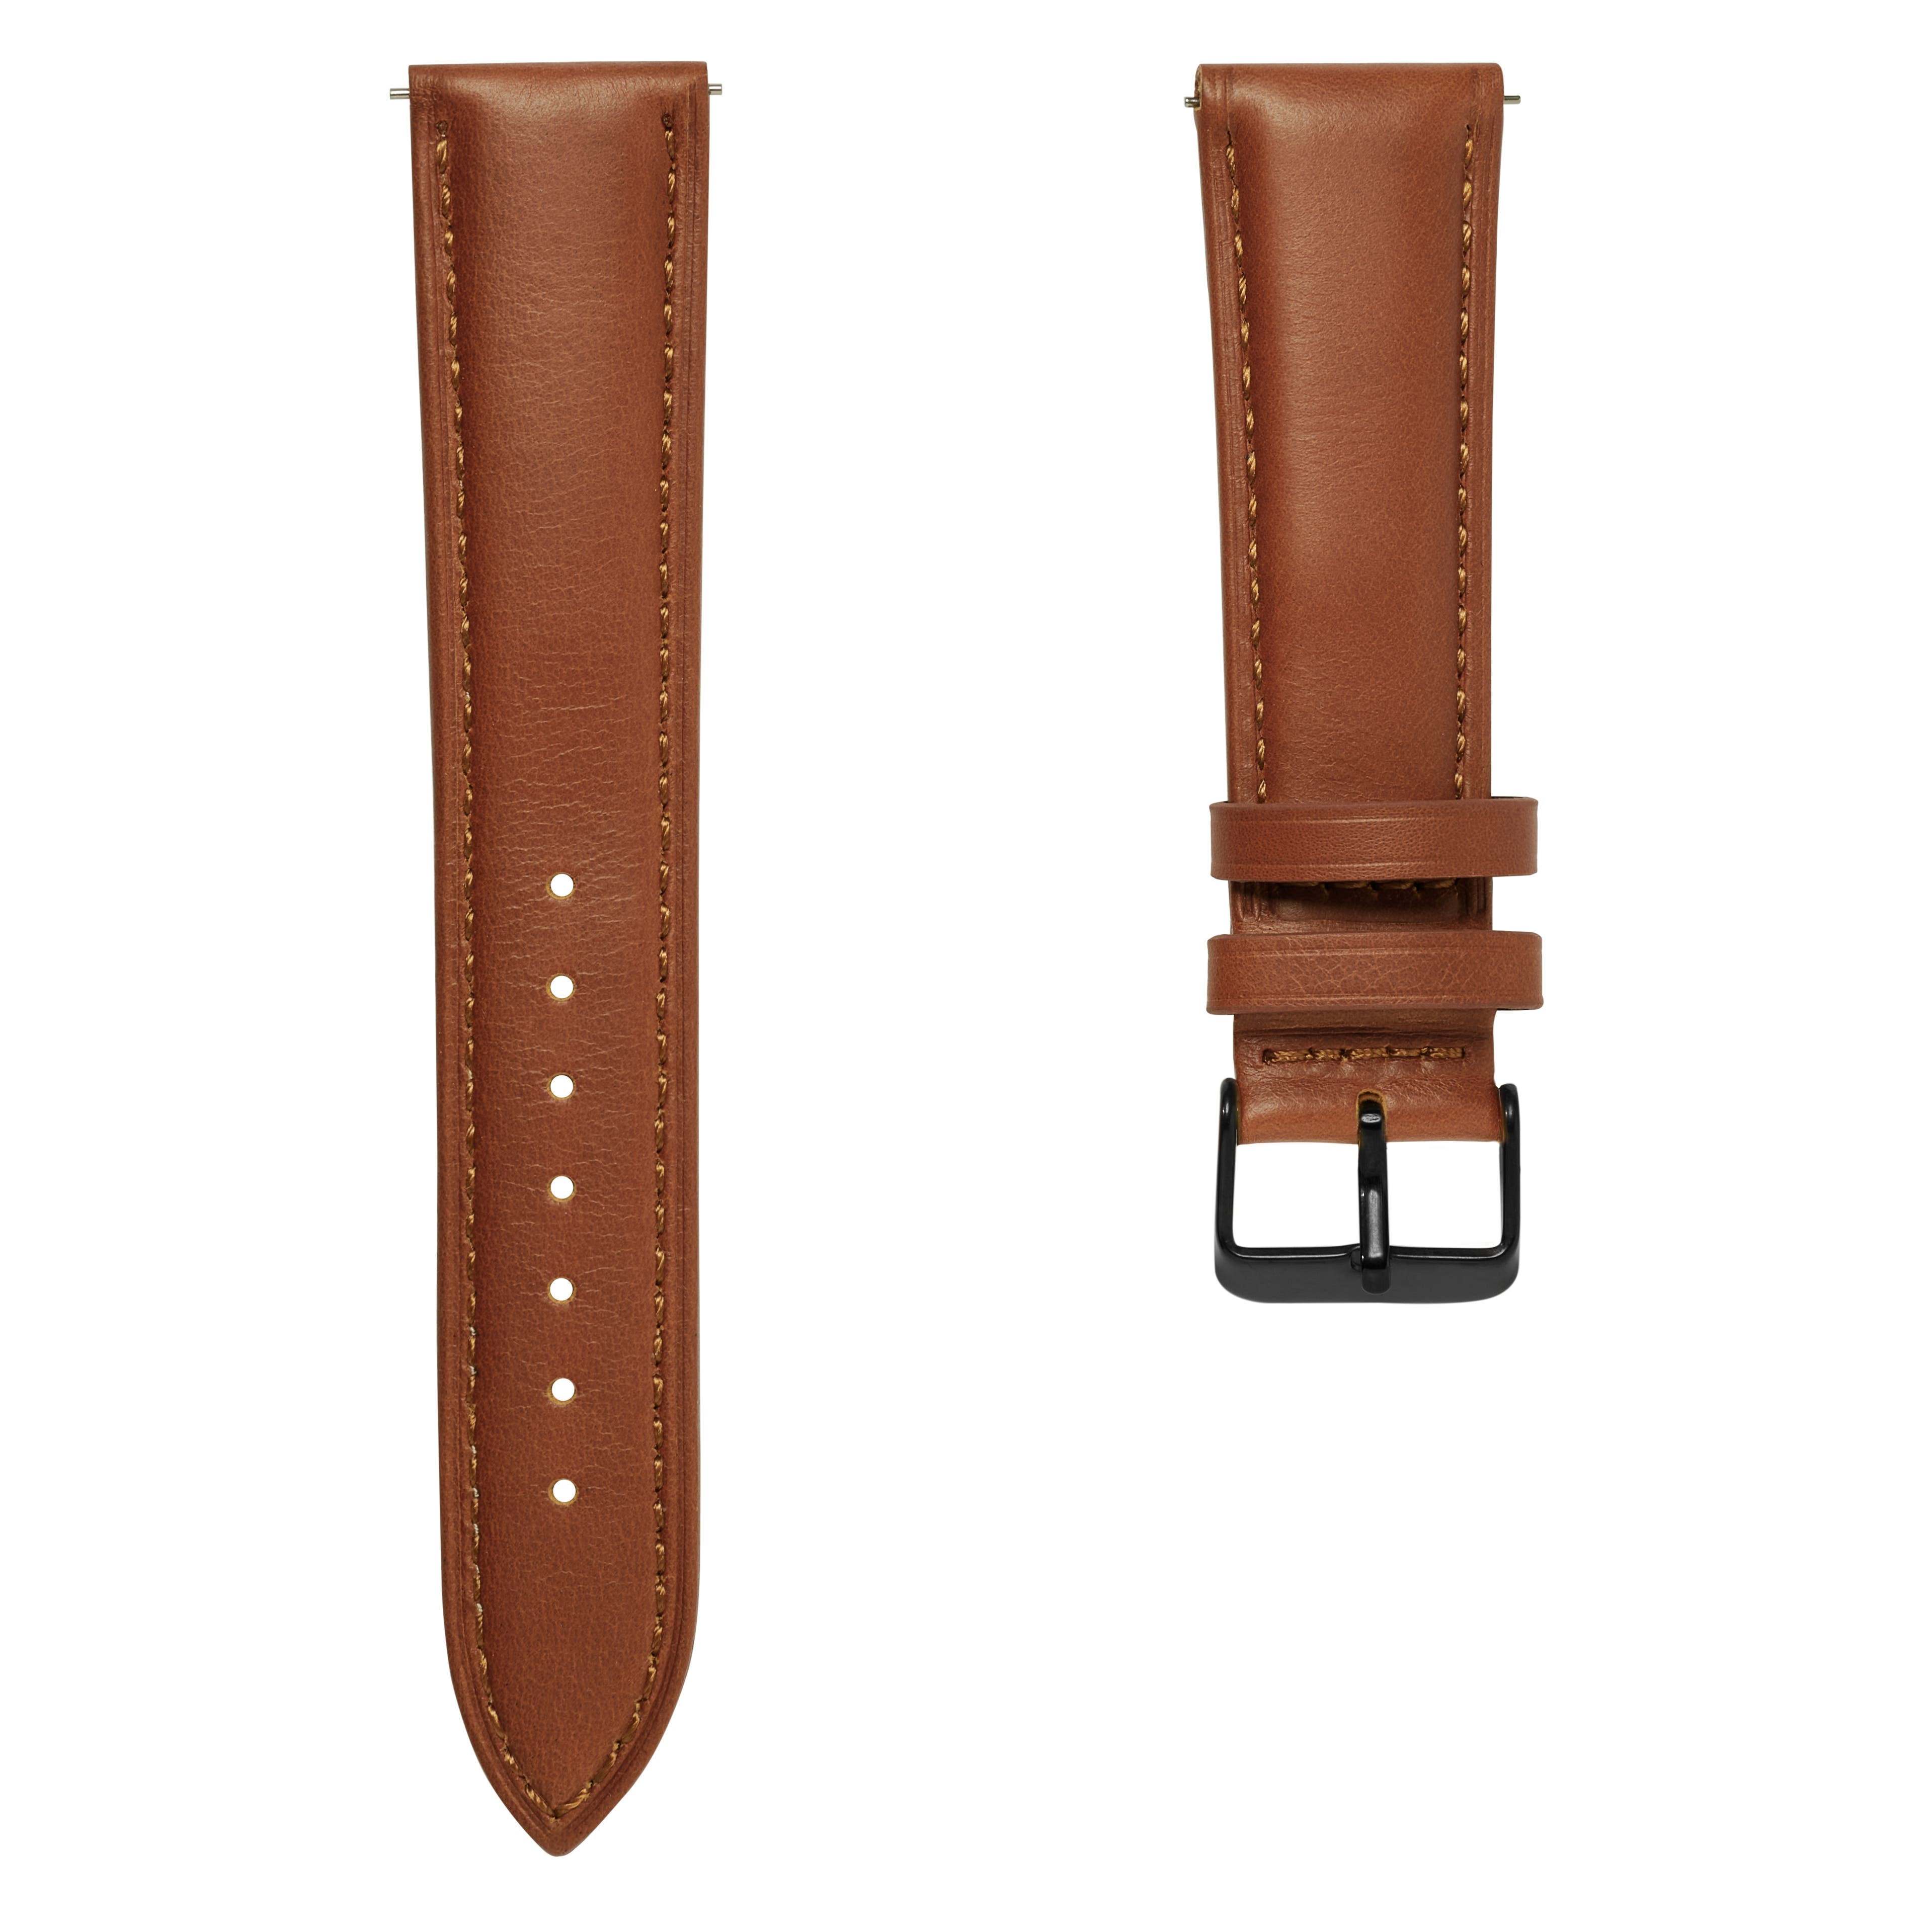 Bracelet de montre en cuir brun havane de 24 mm avec boucle noire - Fixation rapide